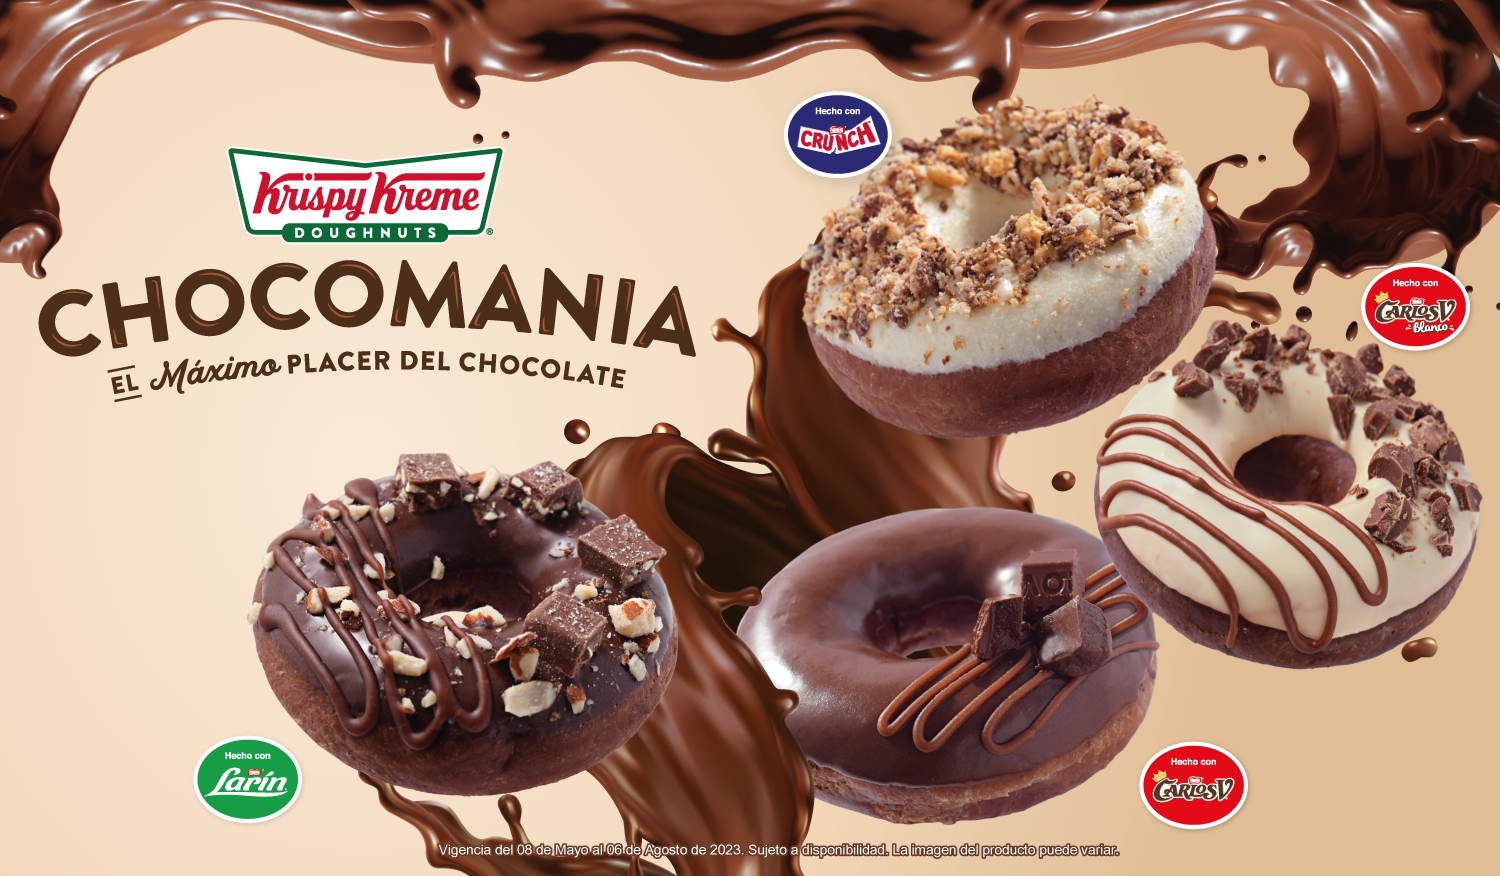 Krispy Kreme invita a probar el máximo sabor del chocolate con Chocomanía